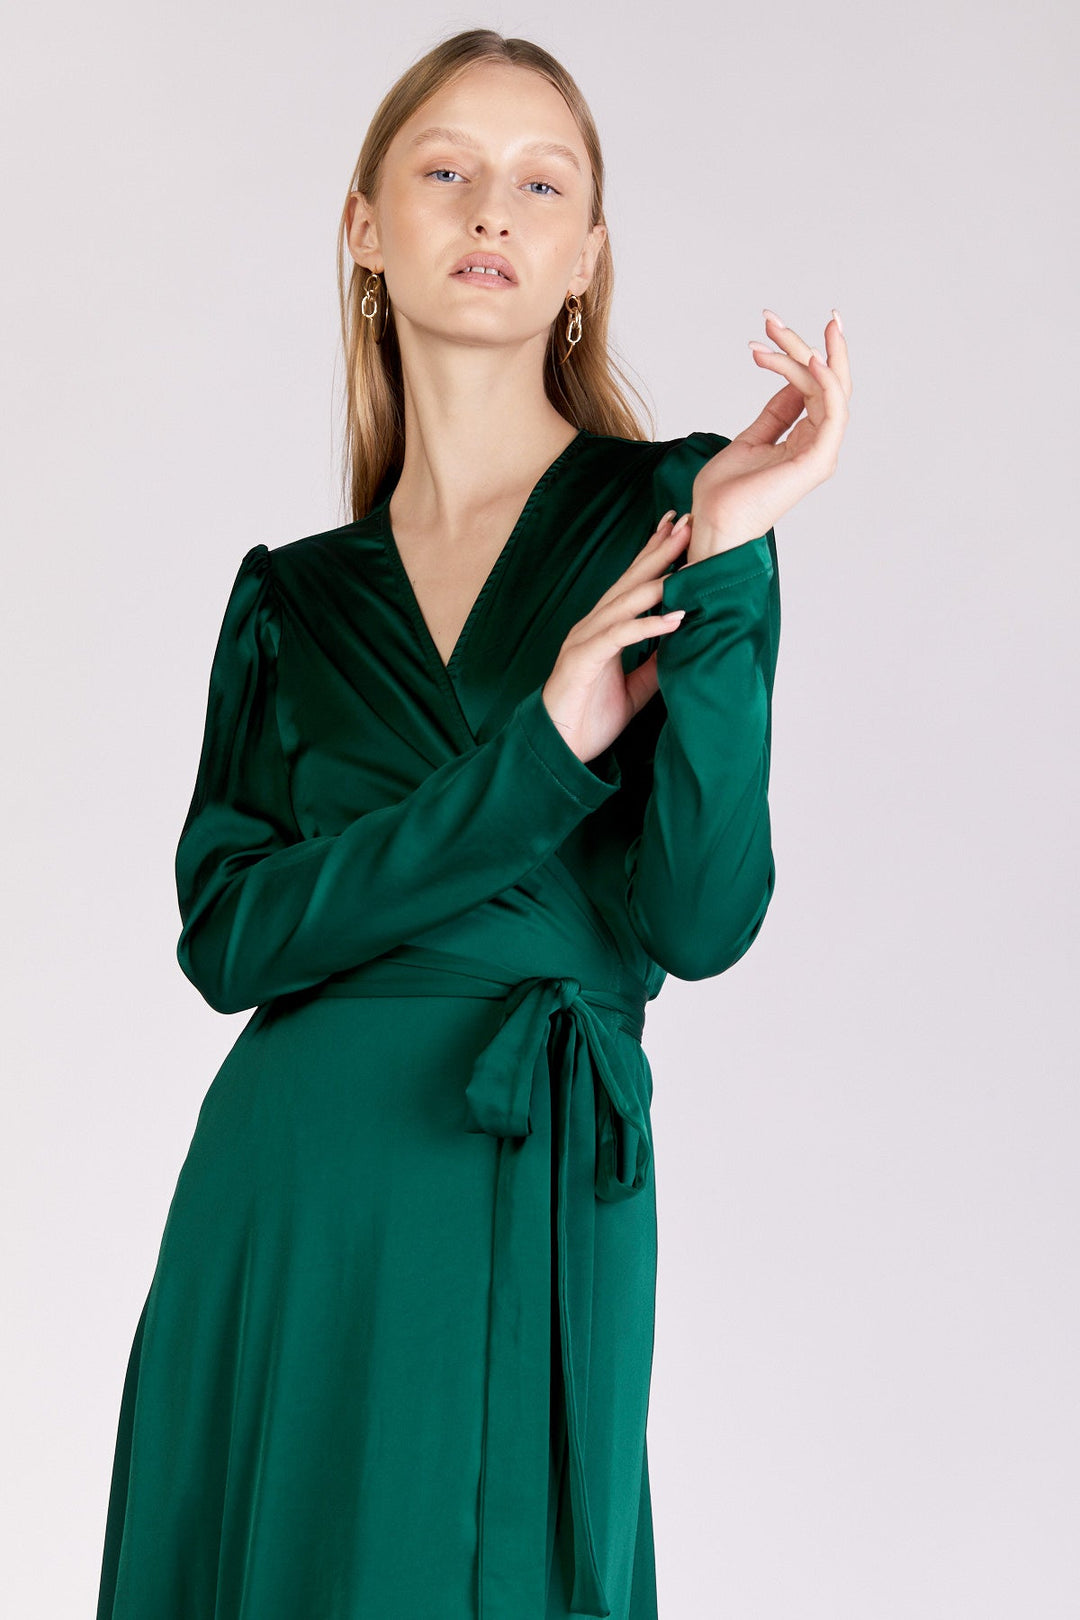 שמלת בלה בצבע ירוק - Neta Efrati